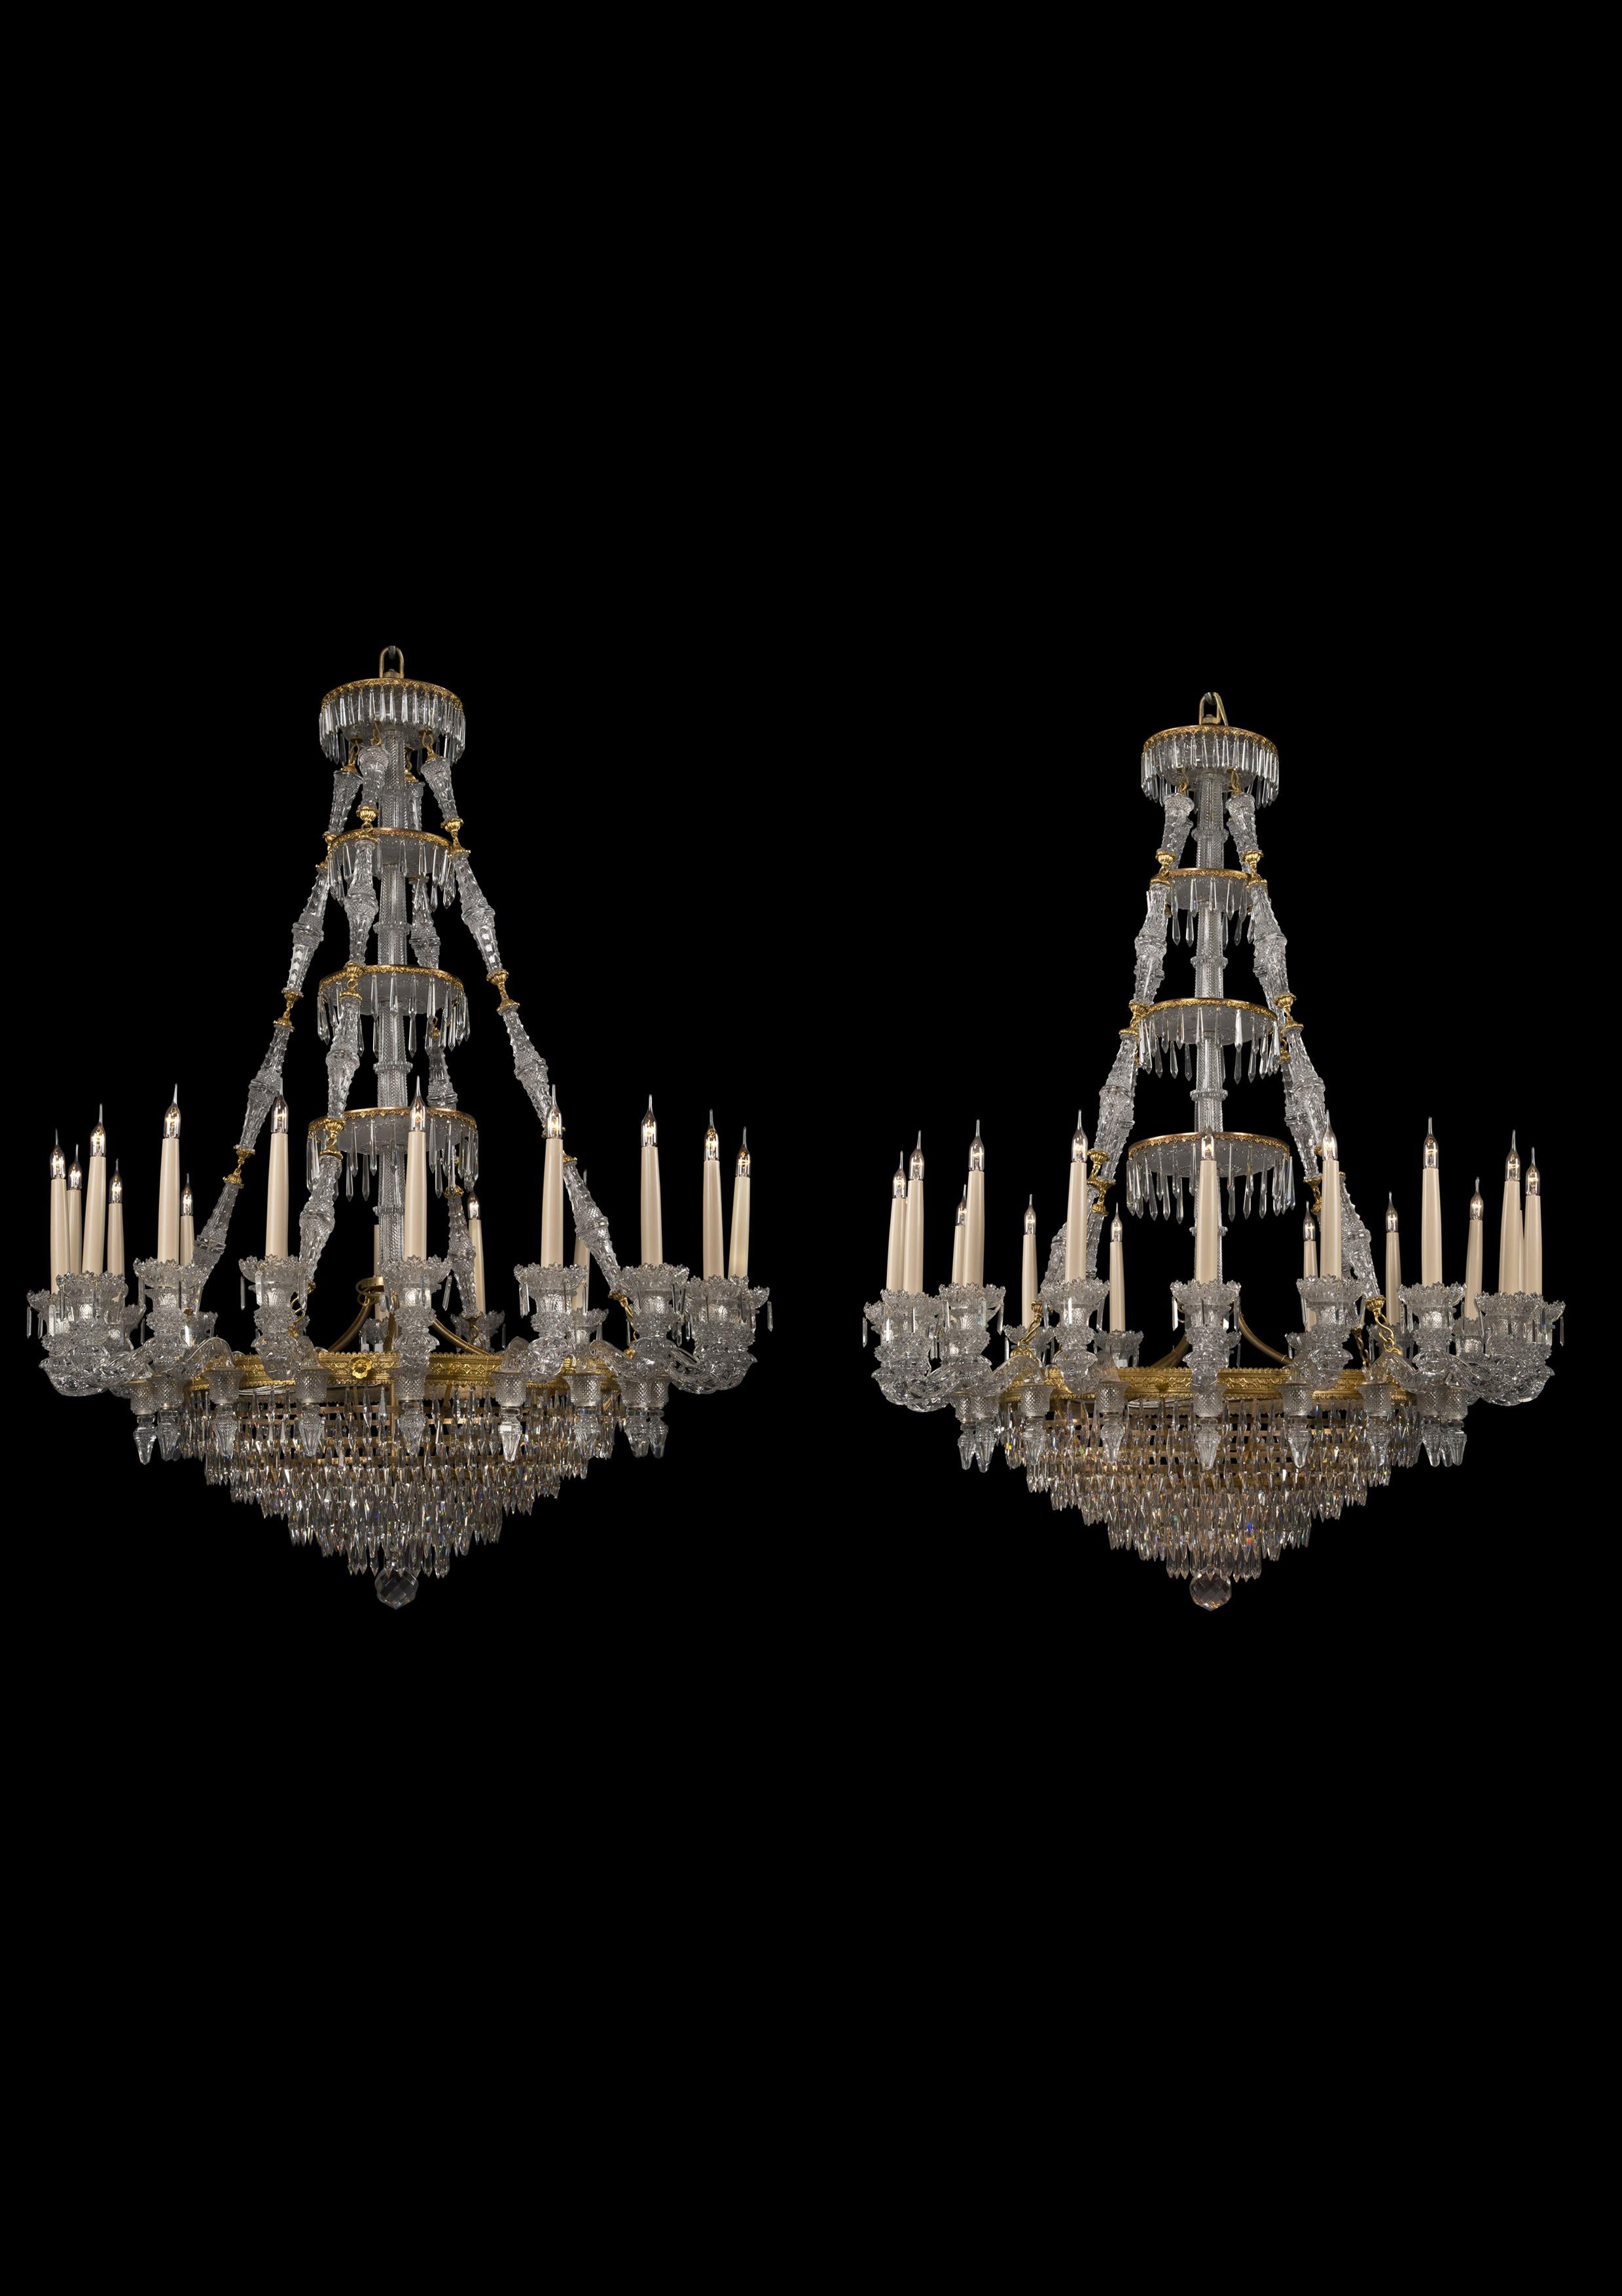 Importante paire de lustres à dix-huit lumières en bronze doré et verre gravé, par La Compagnie des Cristalleries de Baccarat.

Français, vers 1860.

Poids 30kg / 66.1lbs.

Baccarat est le premier fabricant mondial d'articles en cristal.